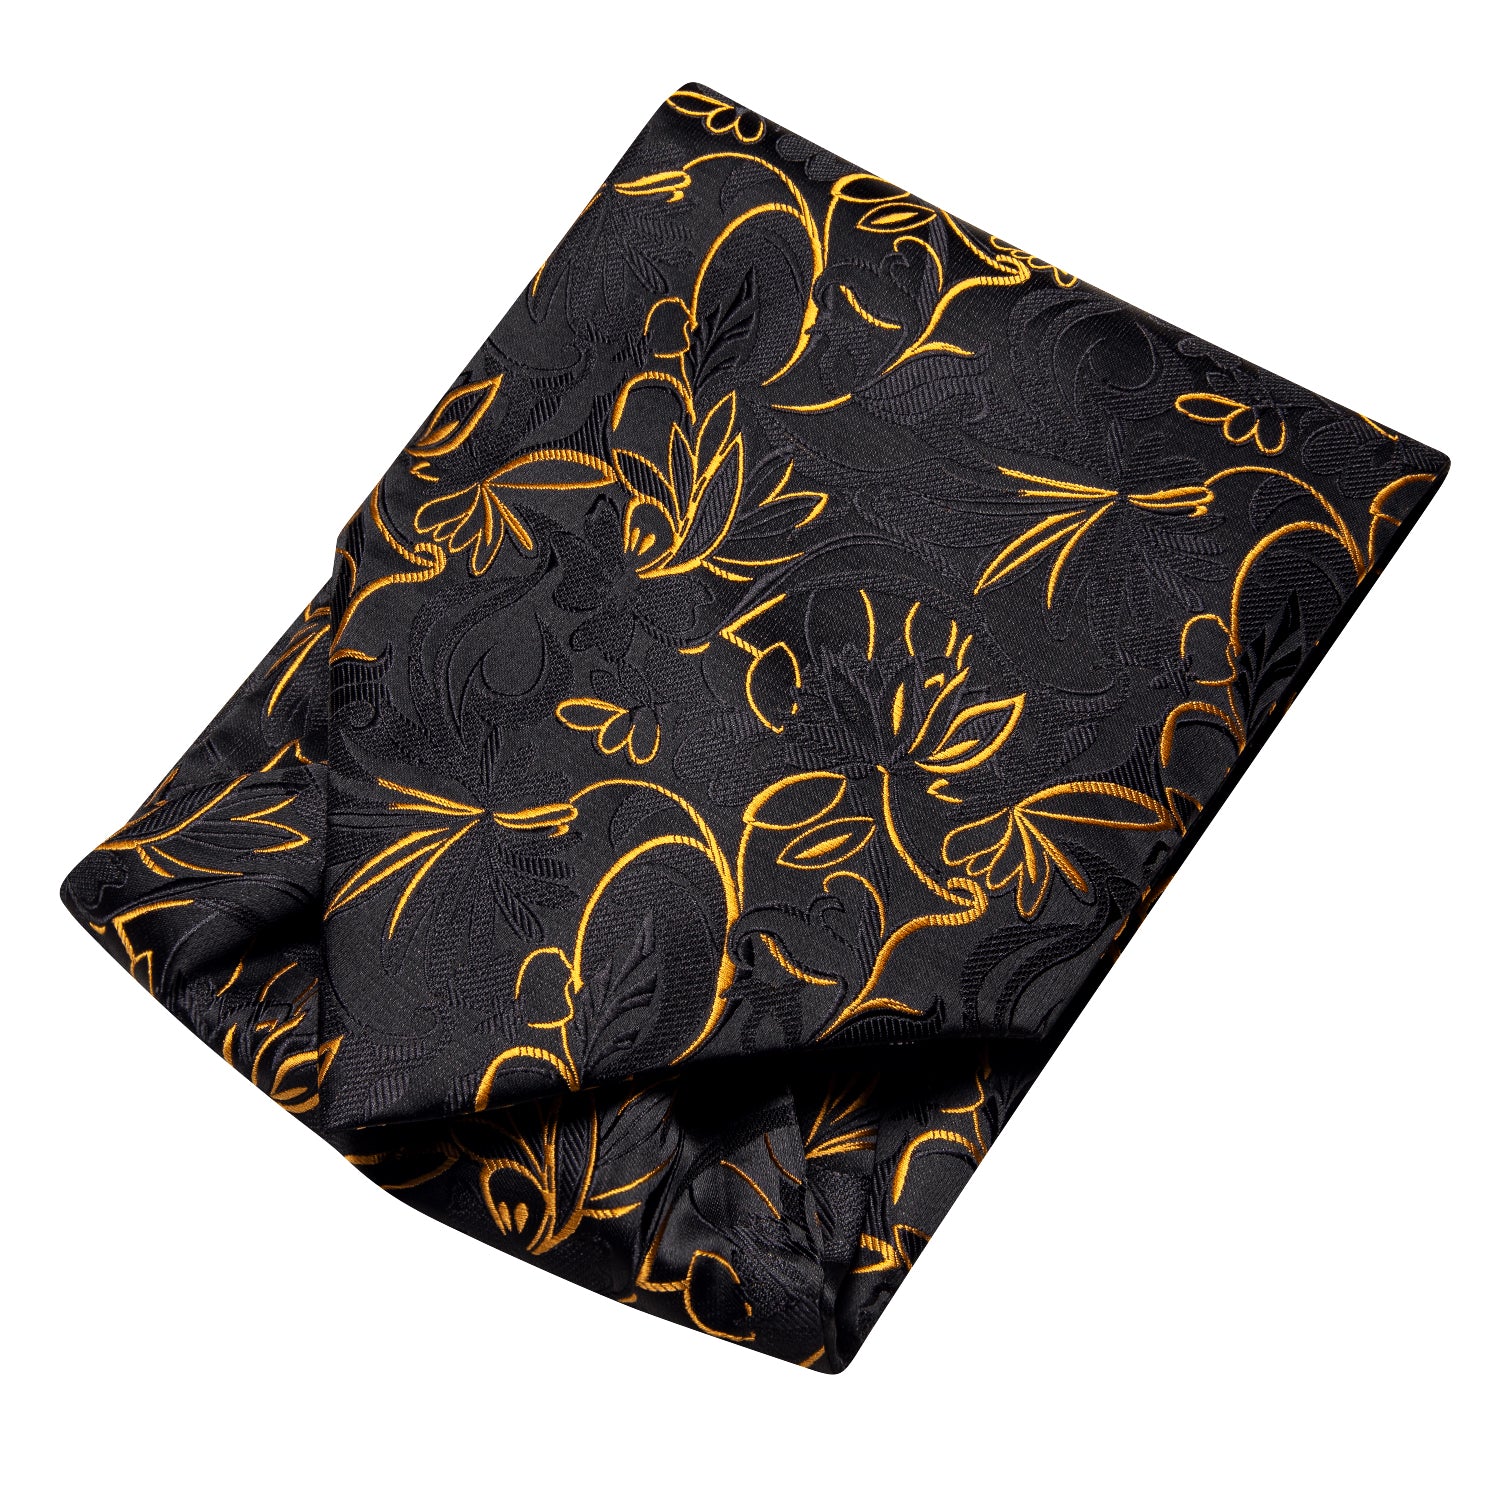 Black Golden Floral Ascot Pocket Square Cufflinks Set